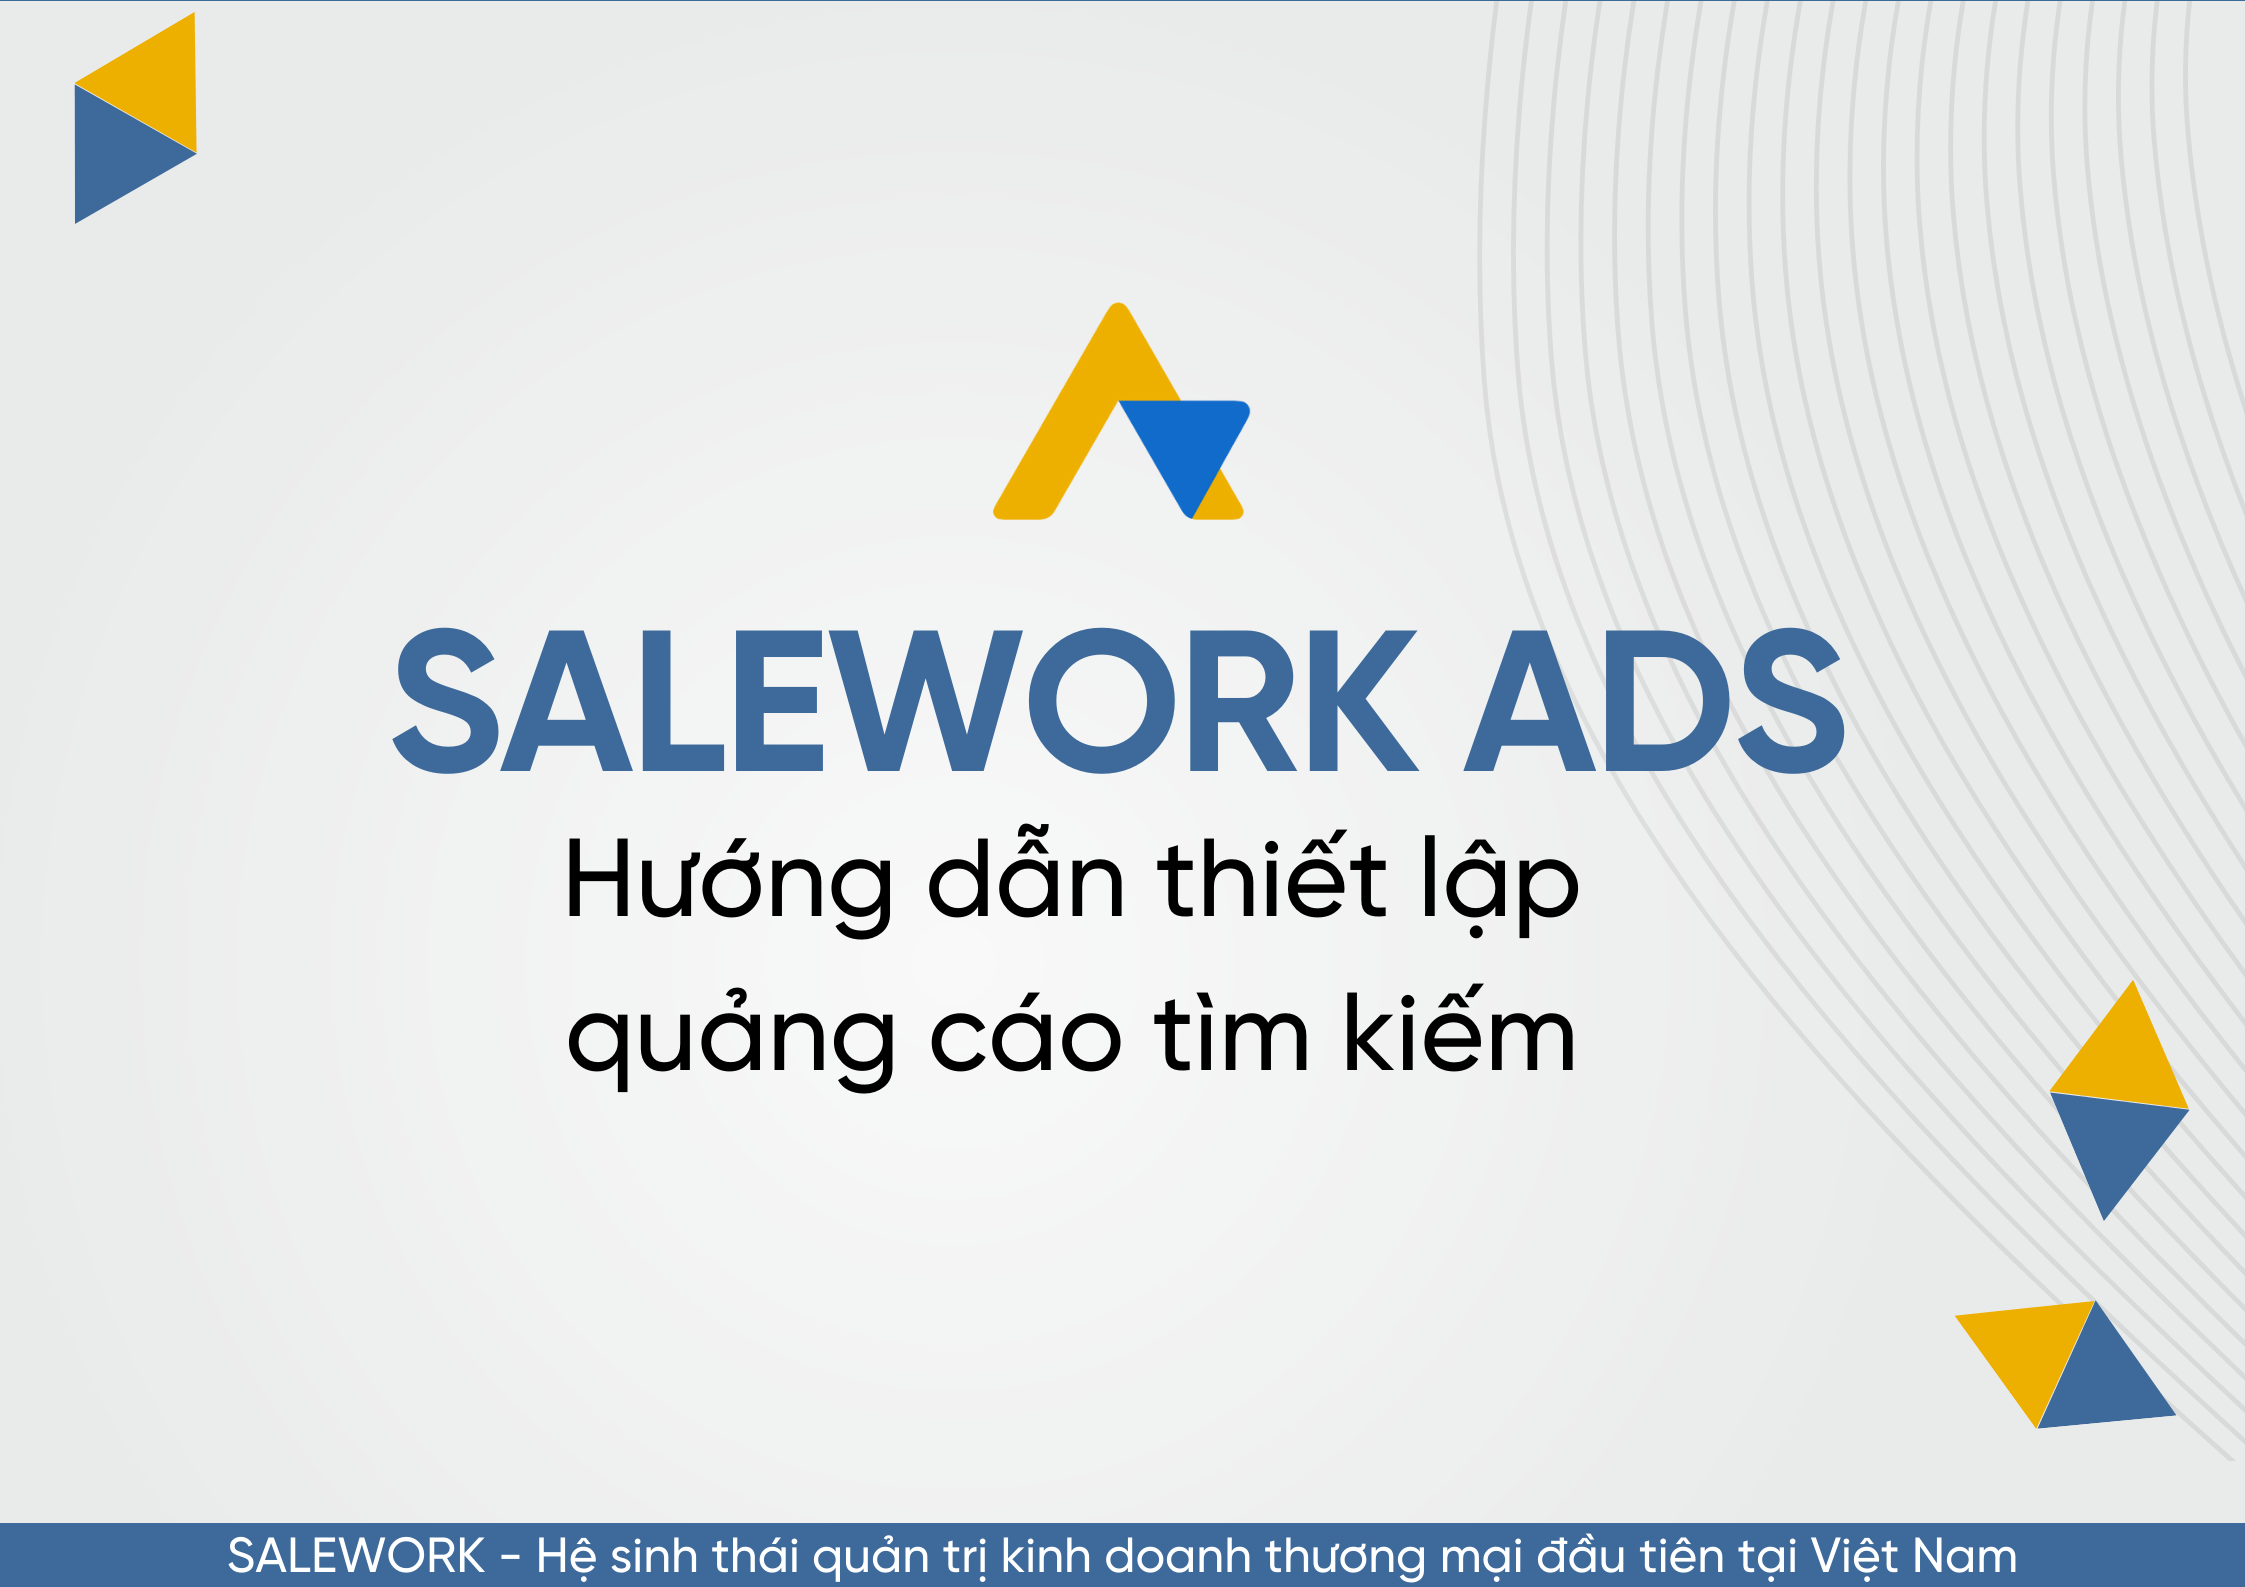 Hướng dẫn thiết lập quảng cáo tìm kiếm tại Salework Ads - 98